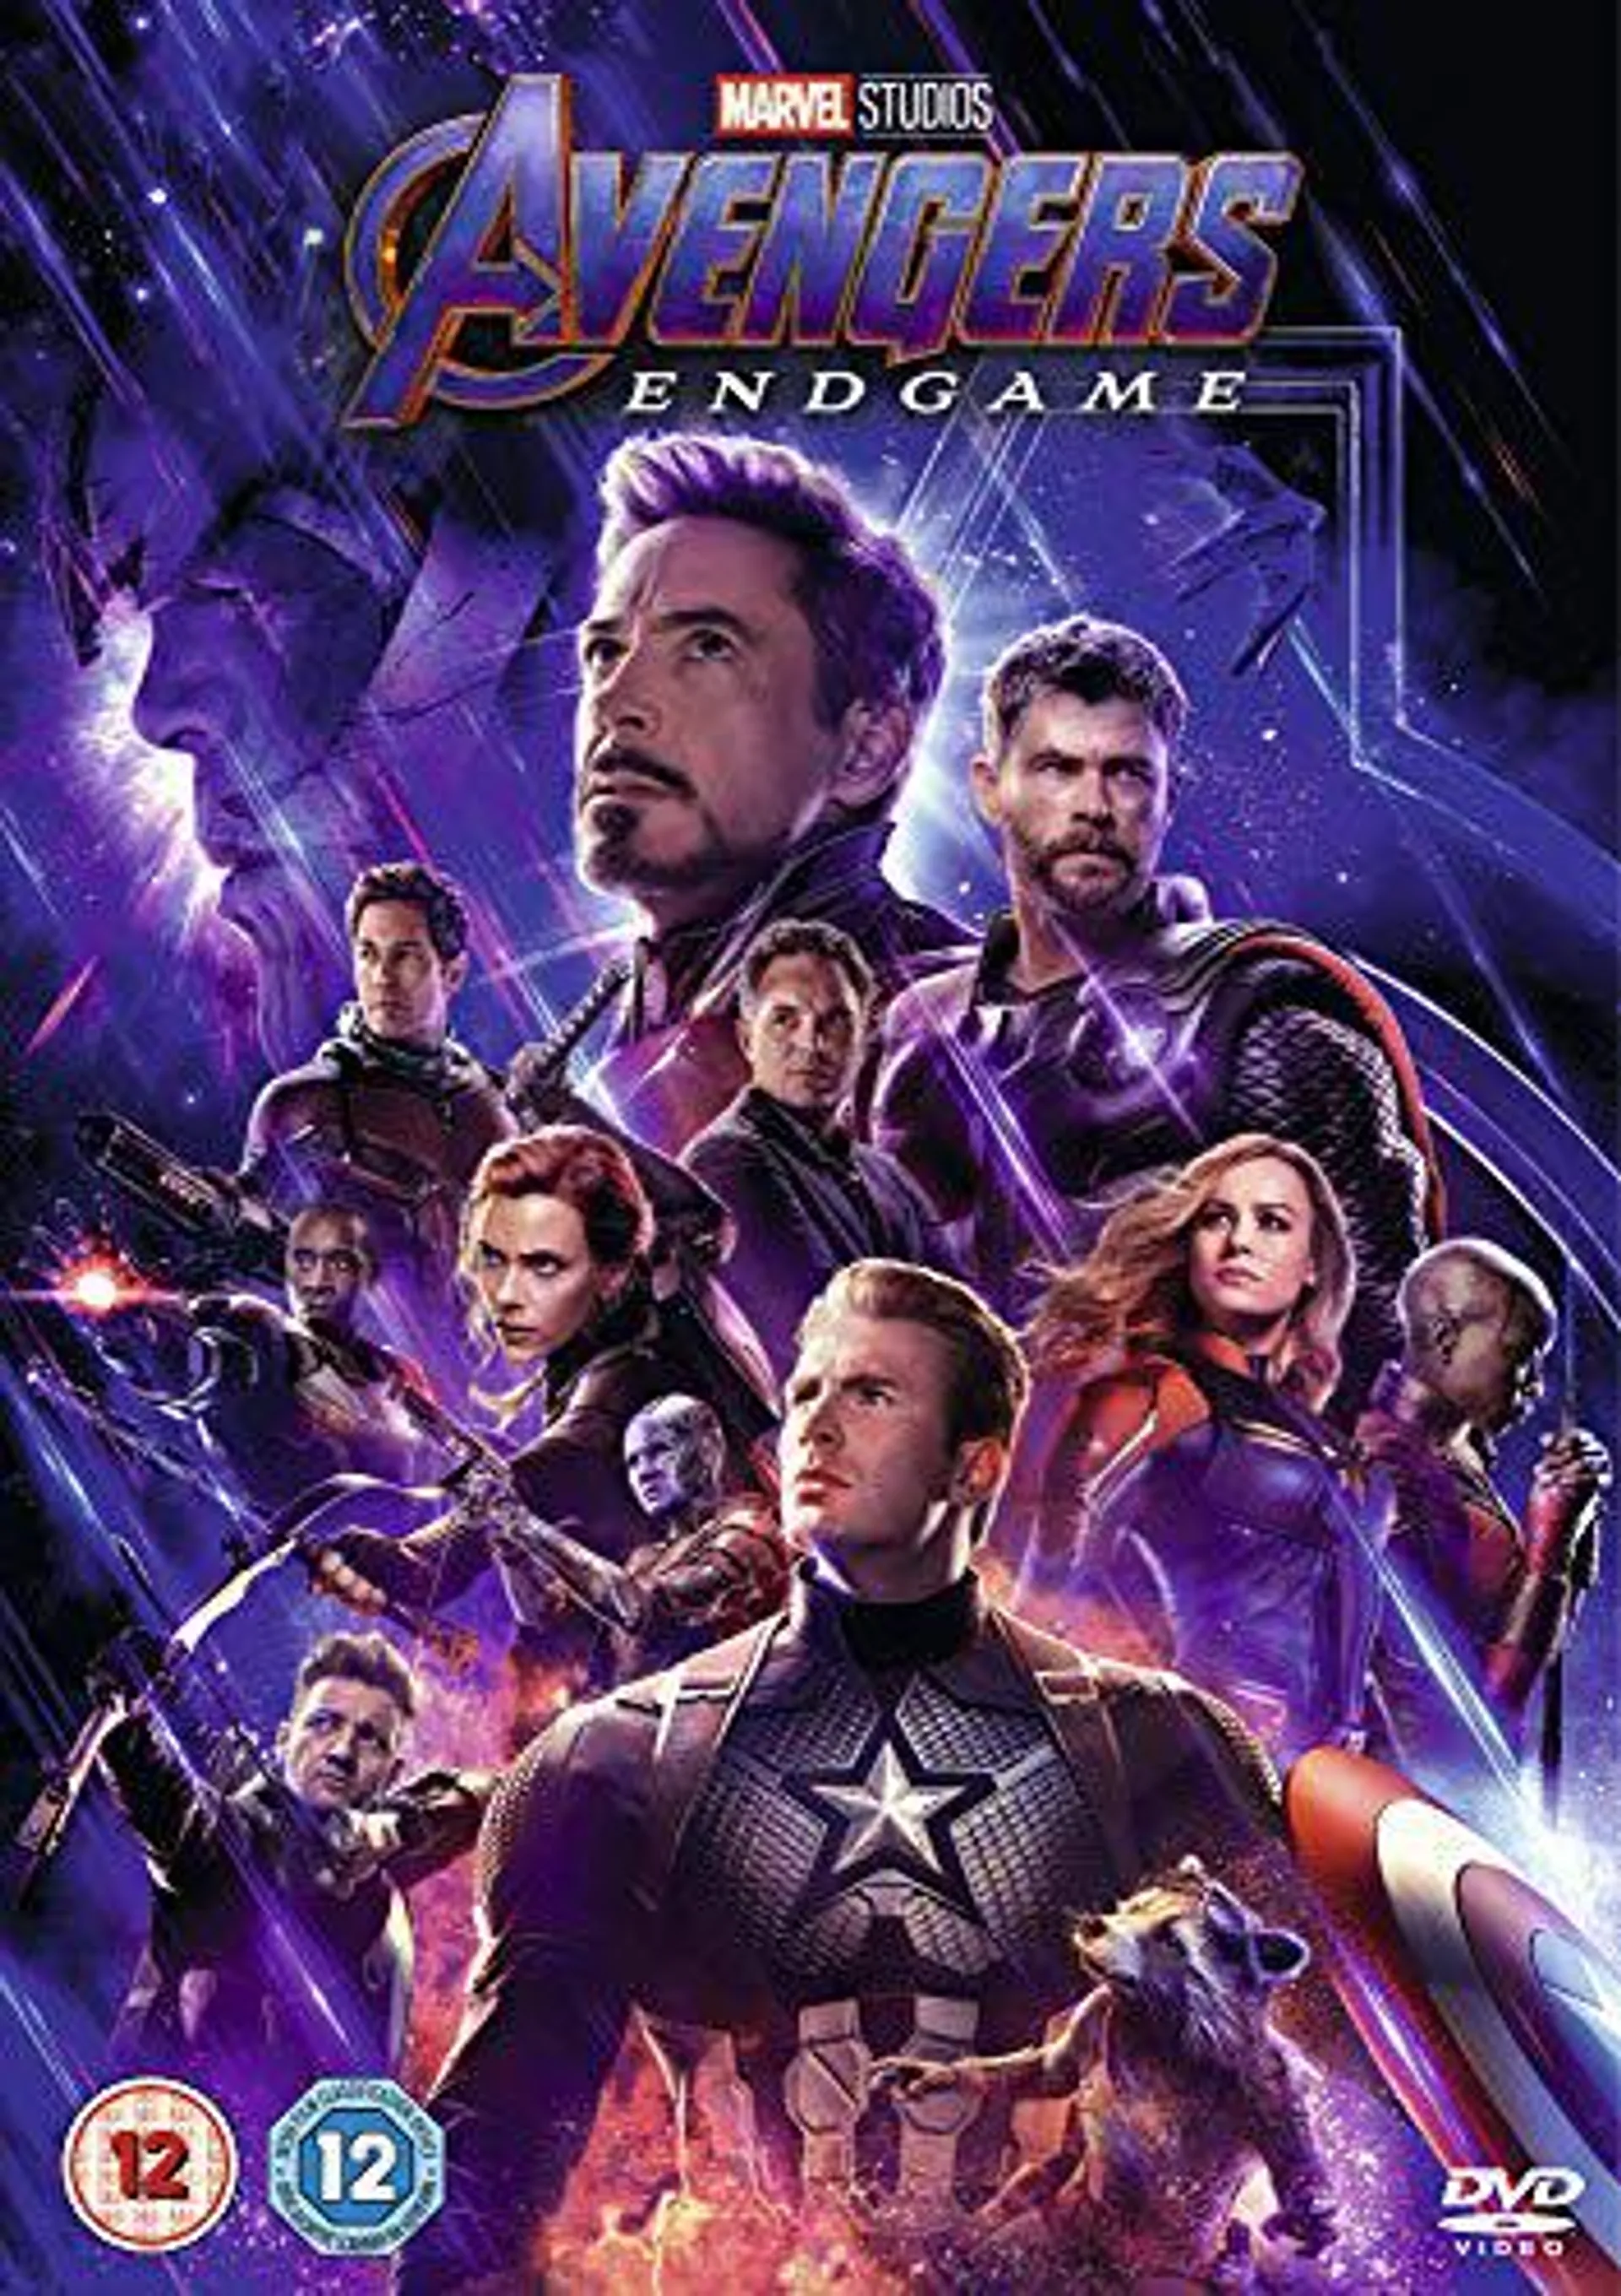 Marvel Studios Avengers: Endgame